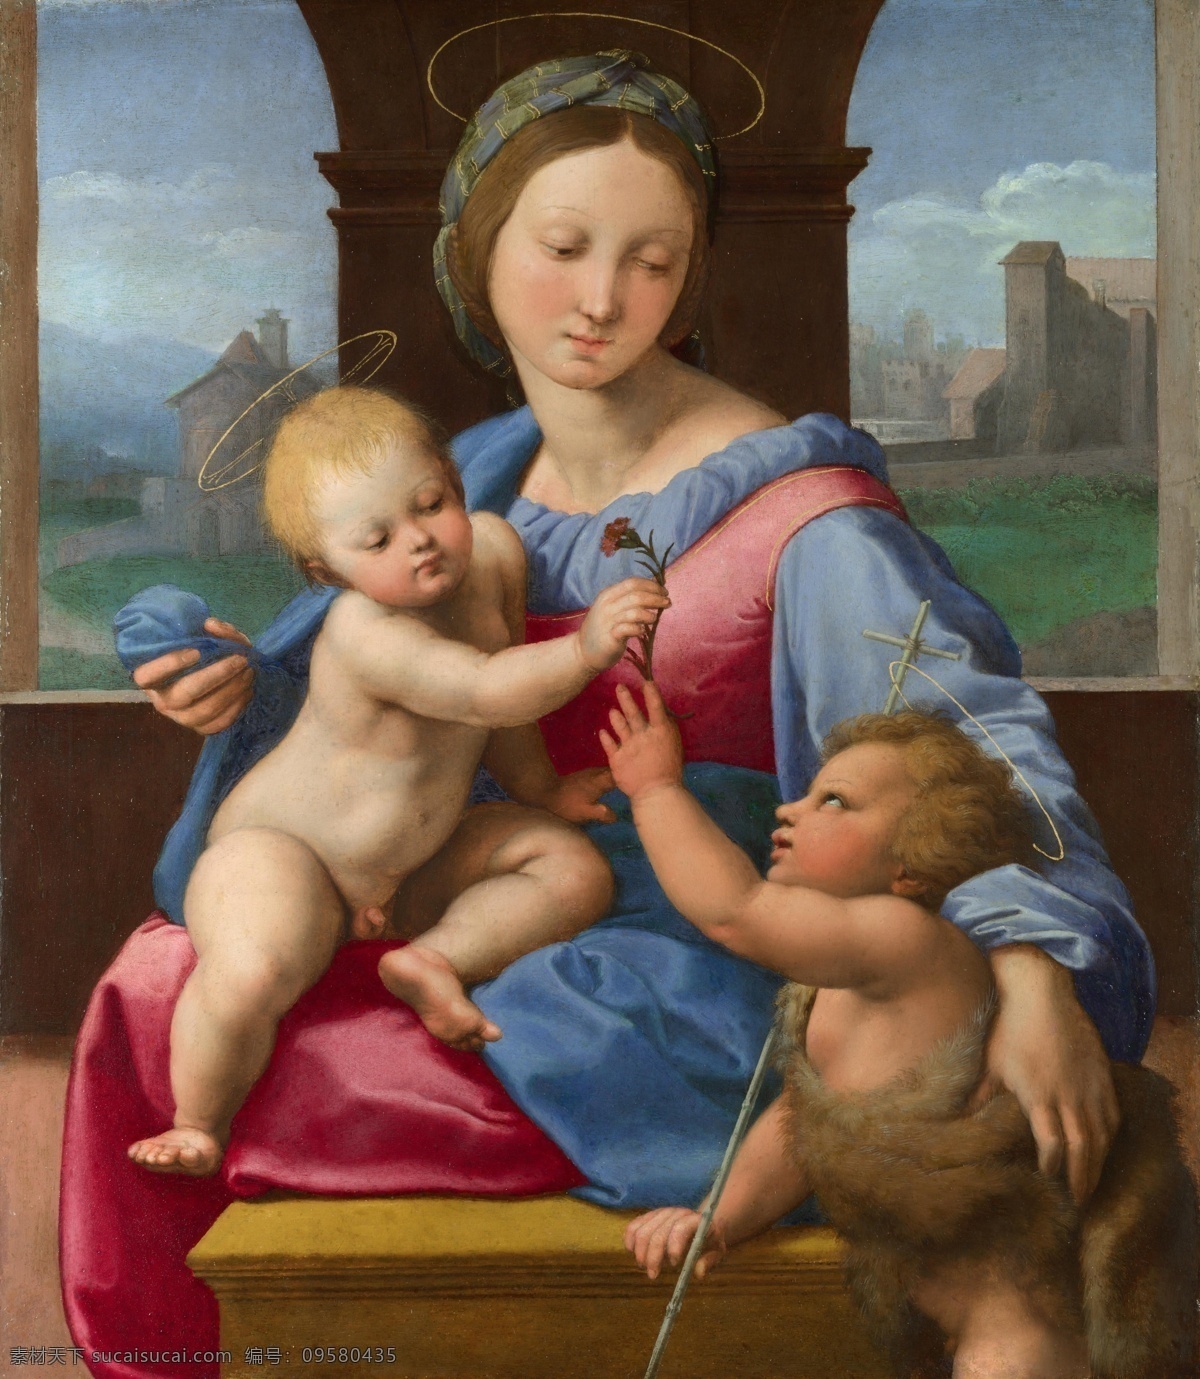 拉斐尔作品 文艺复兴时期 意大利画家 国家艺术馆 拉斐尔 宗教艺术 圣母 绘画书法 文化艺术 耶稣 古典油画 人物 绘画 油画 肖像 拉斐尔油画